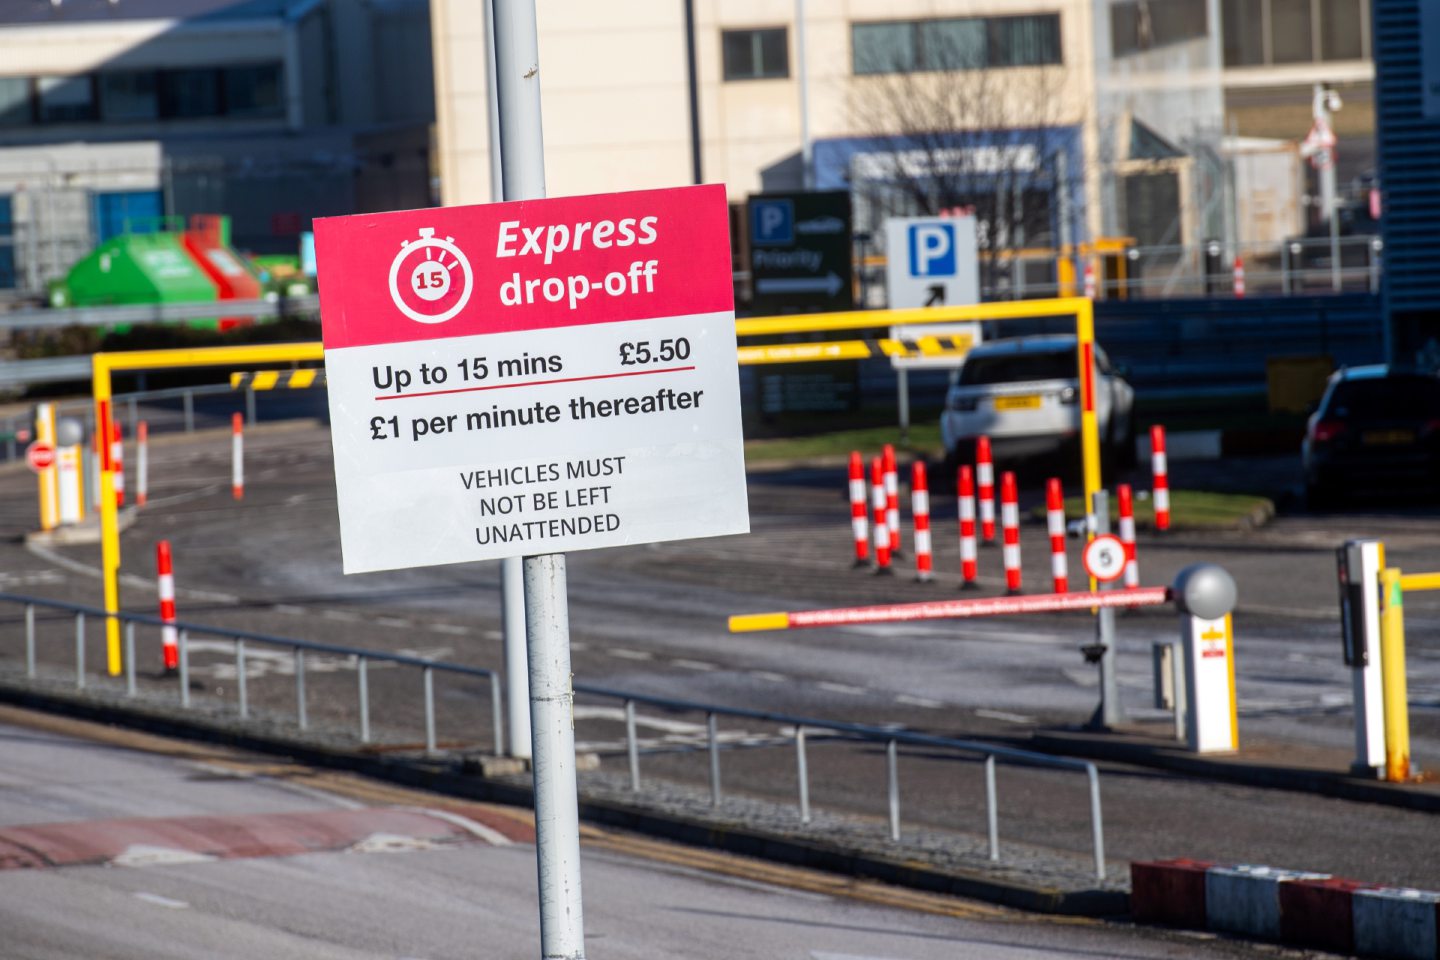 Express drop-off sign at Aberdeen Airport.